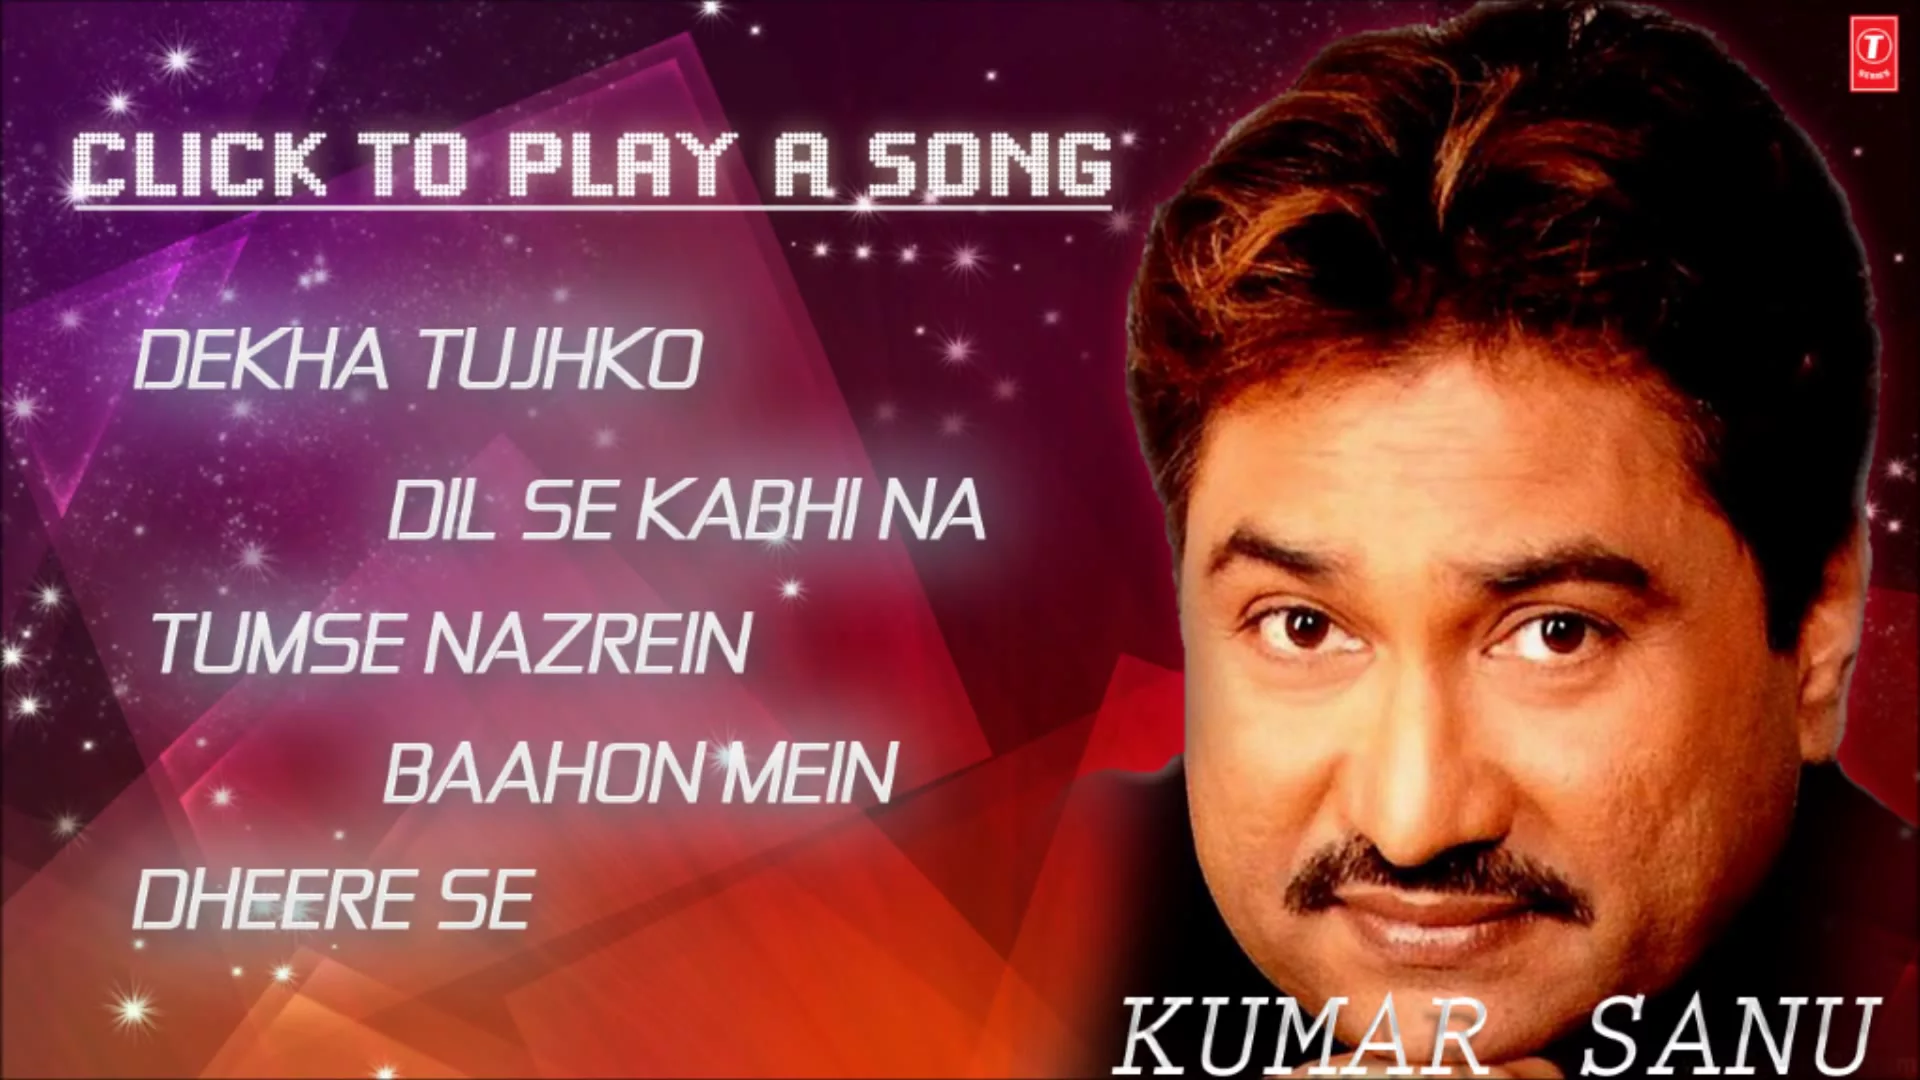 Aise Na Dekho Mujhe Jukebox 1 - Kumar Sanu Hit Album Songs